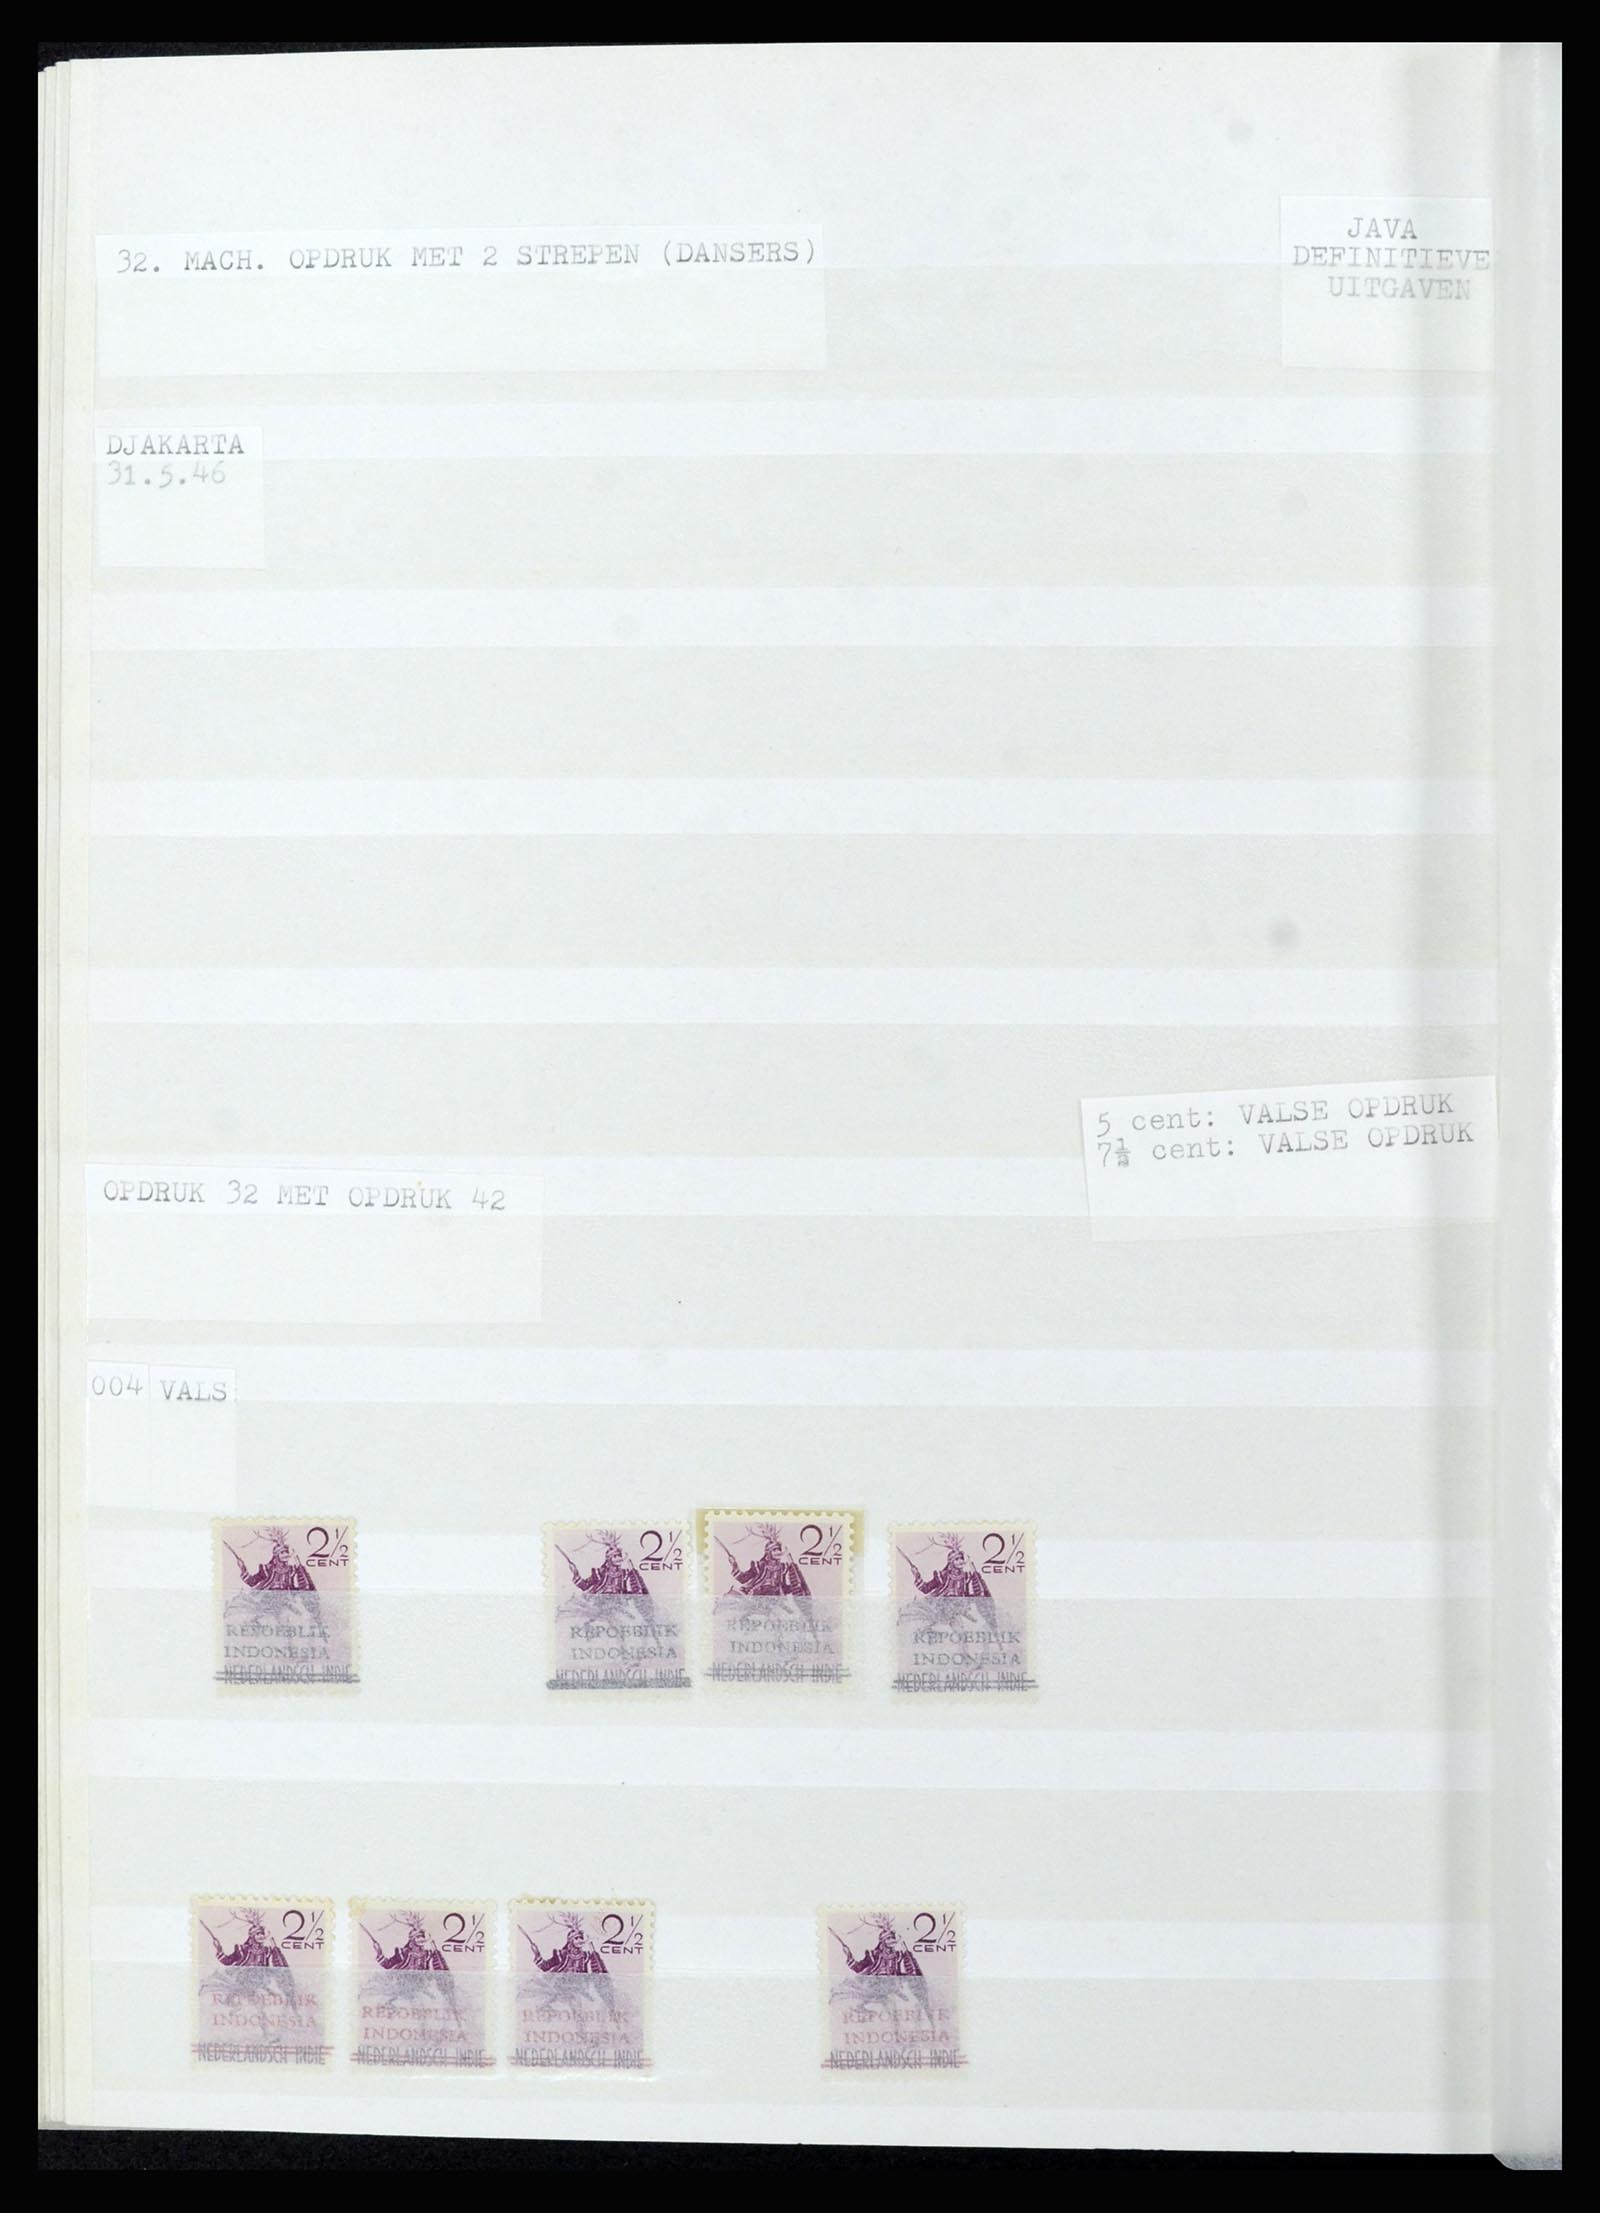 36742 307 - Stamp collection 36742 Dutch Indies interim period 1945-1949.